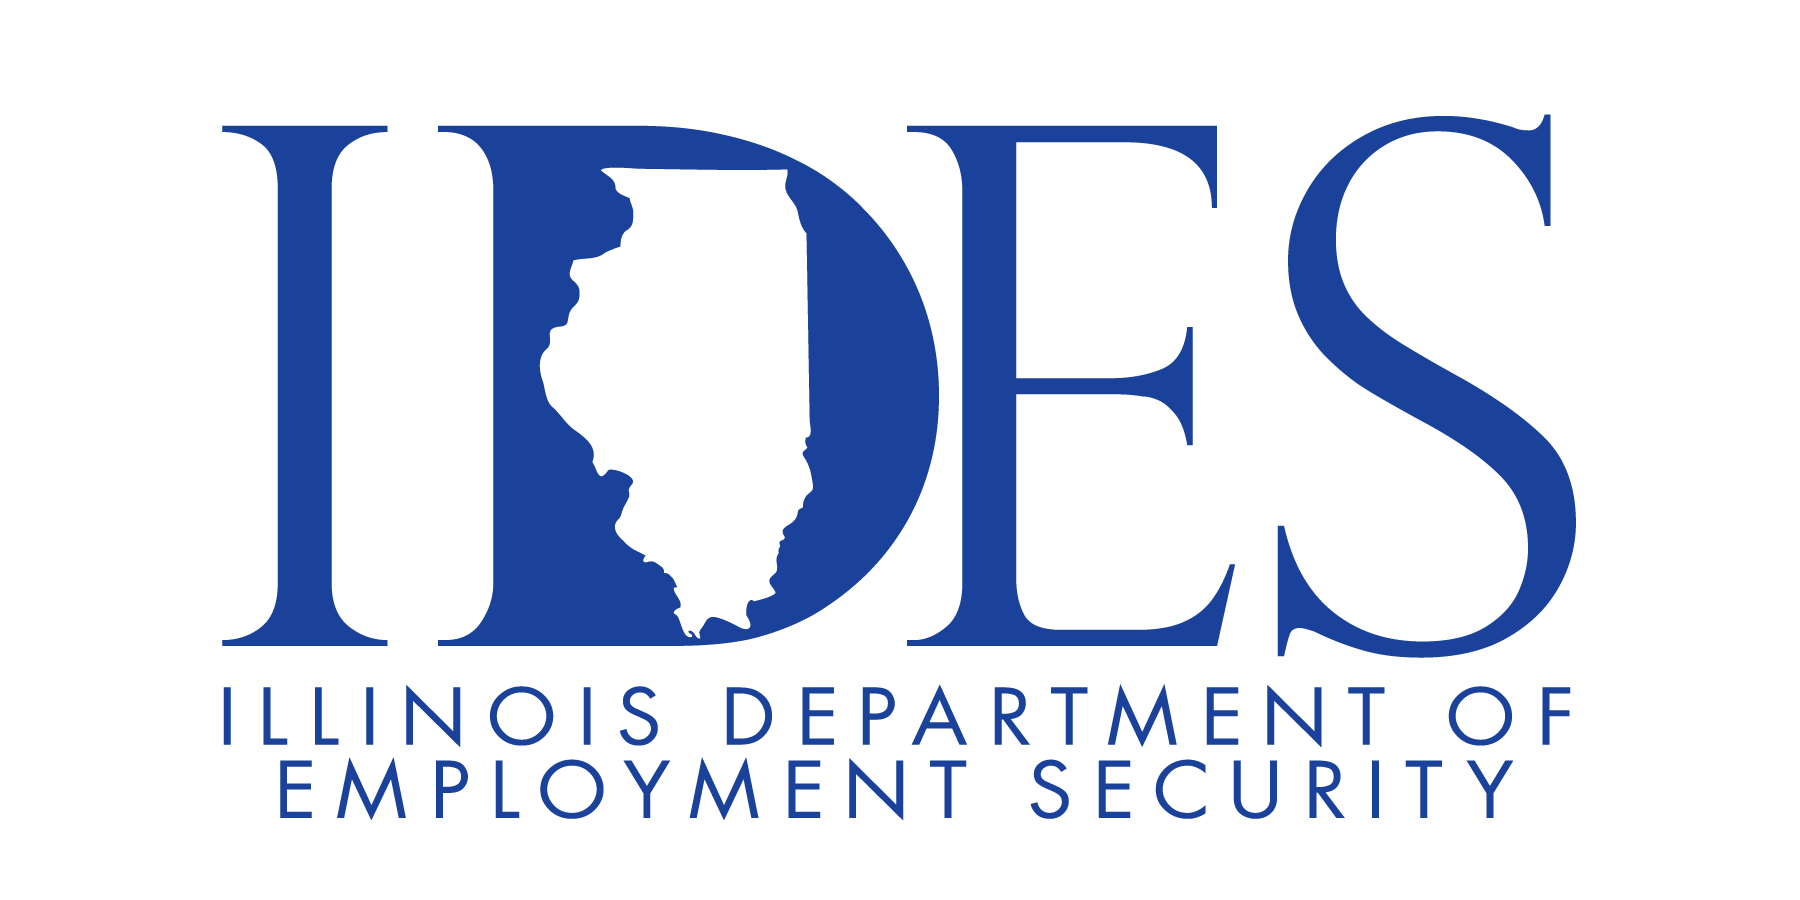 Illinois job links resume of job